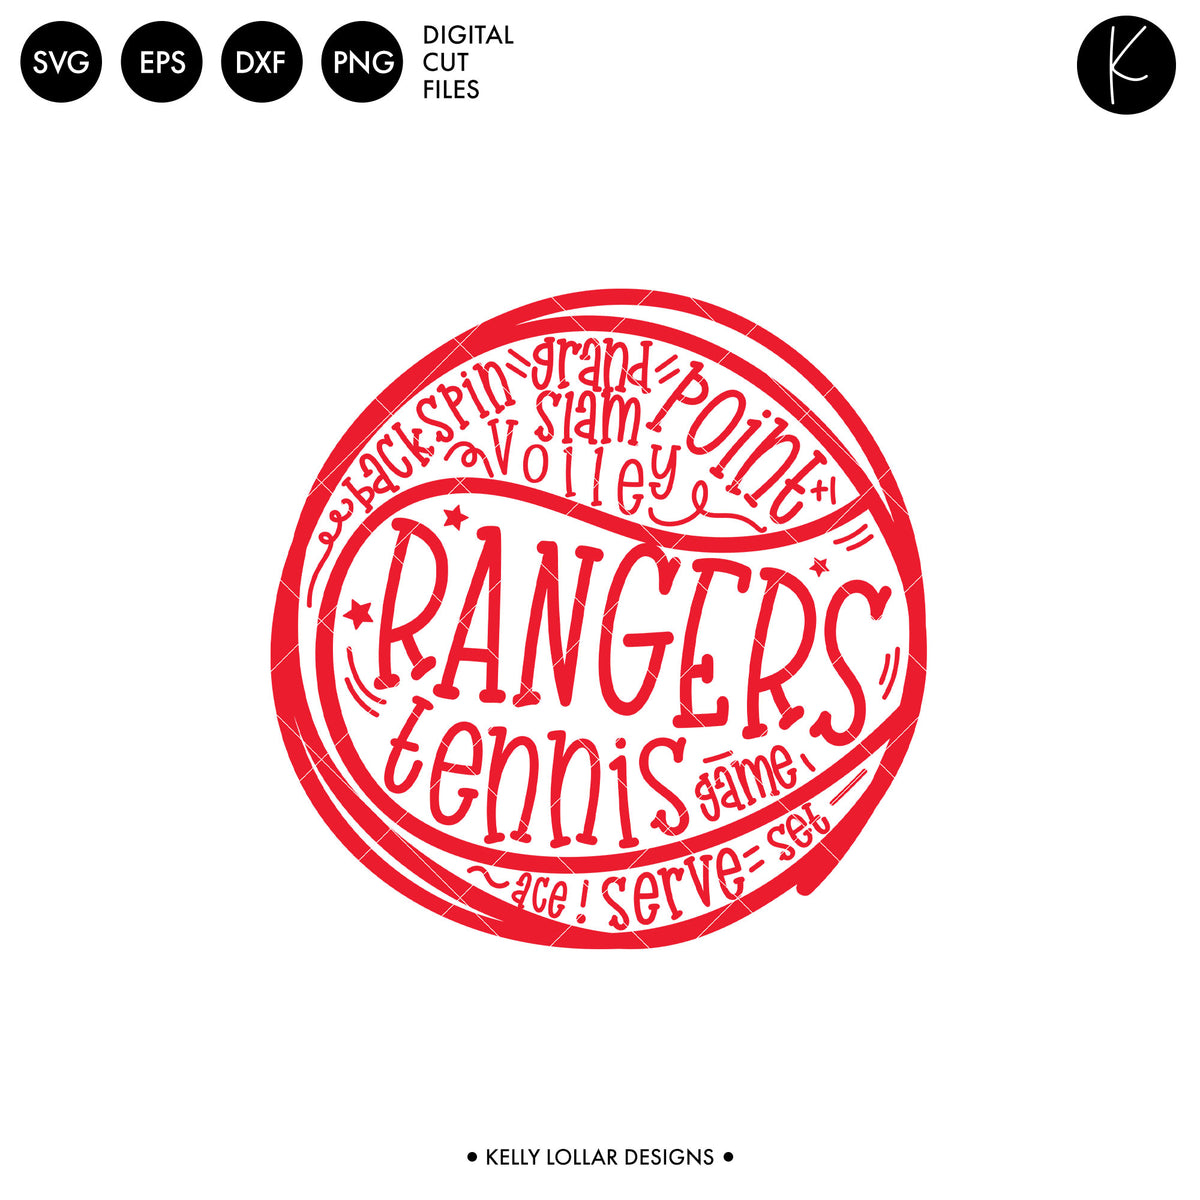 Rangers Tennis Bundle | SVG DXF EPS PNG Cut Files